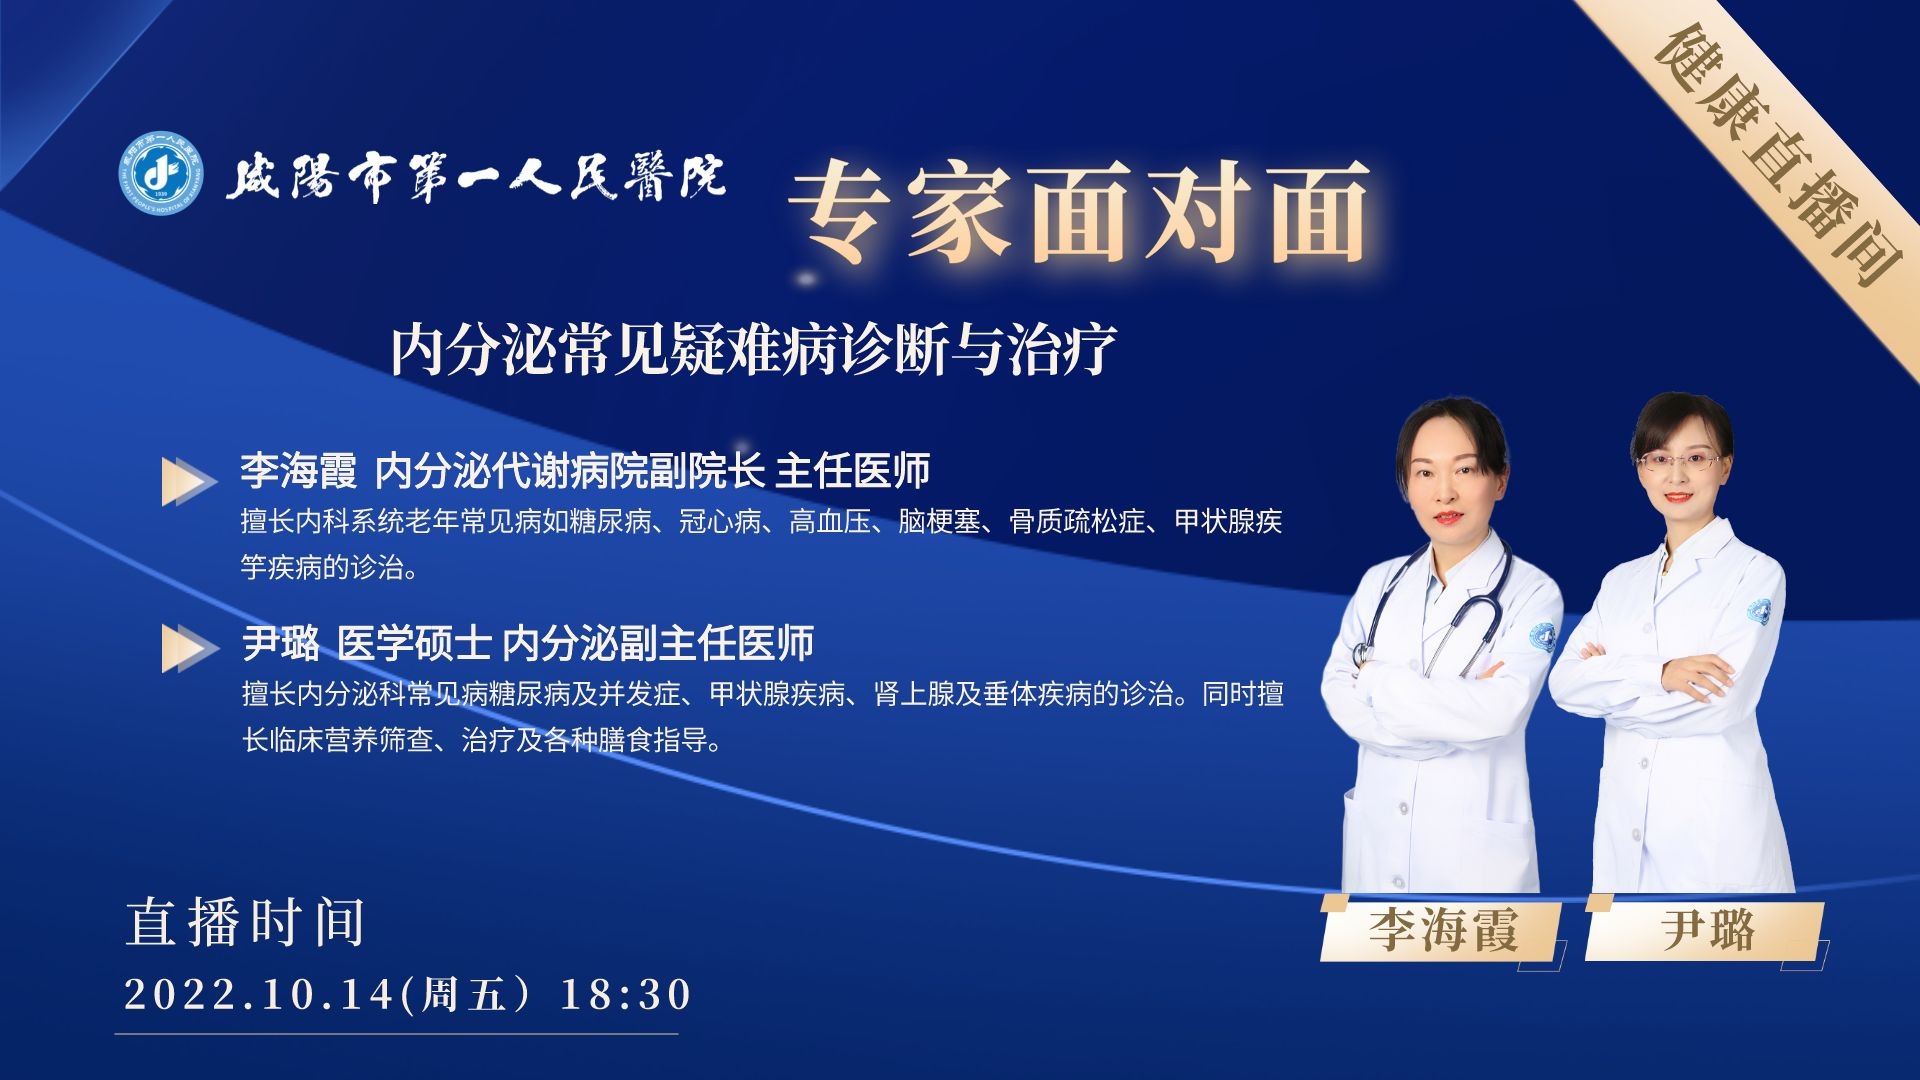 【直播預告】咸陽市第一人民醫院內分泌常見疑難病診斷與治療